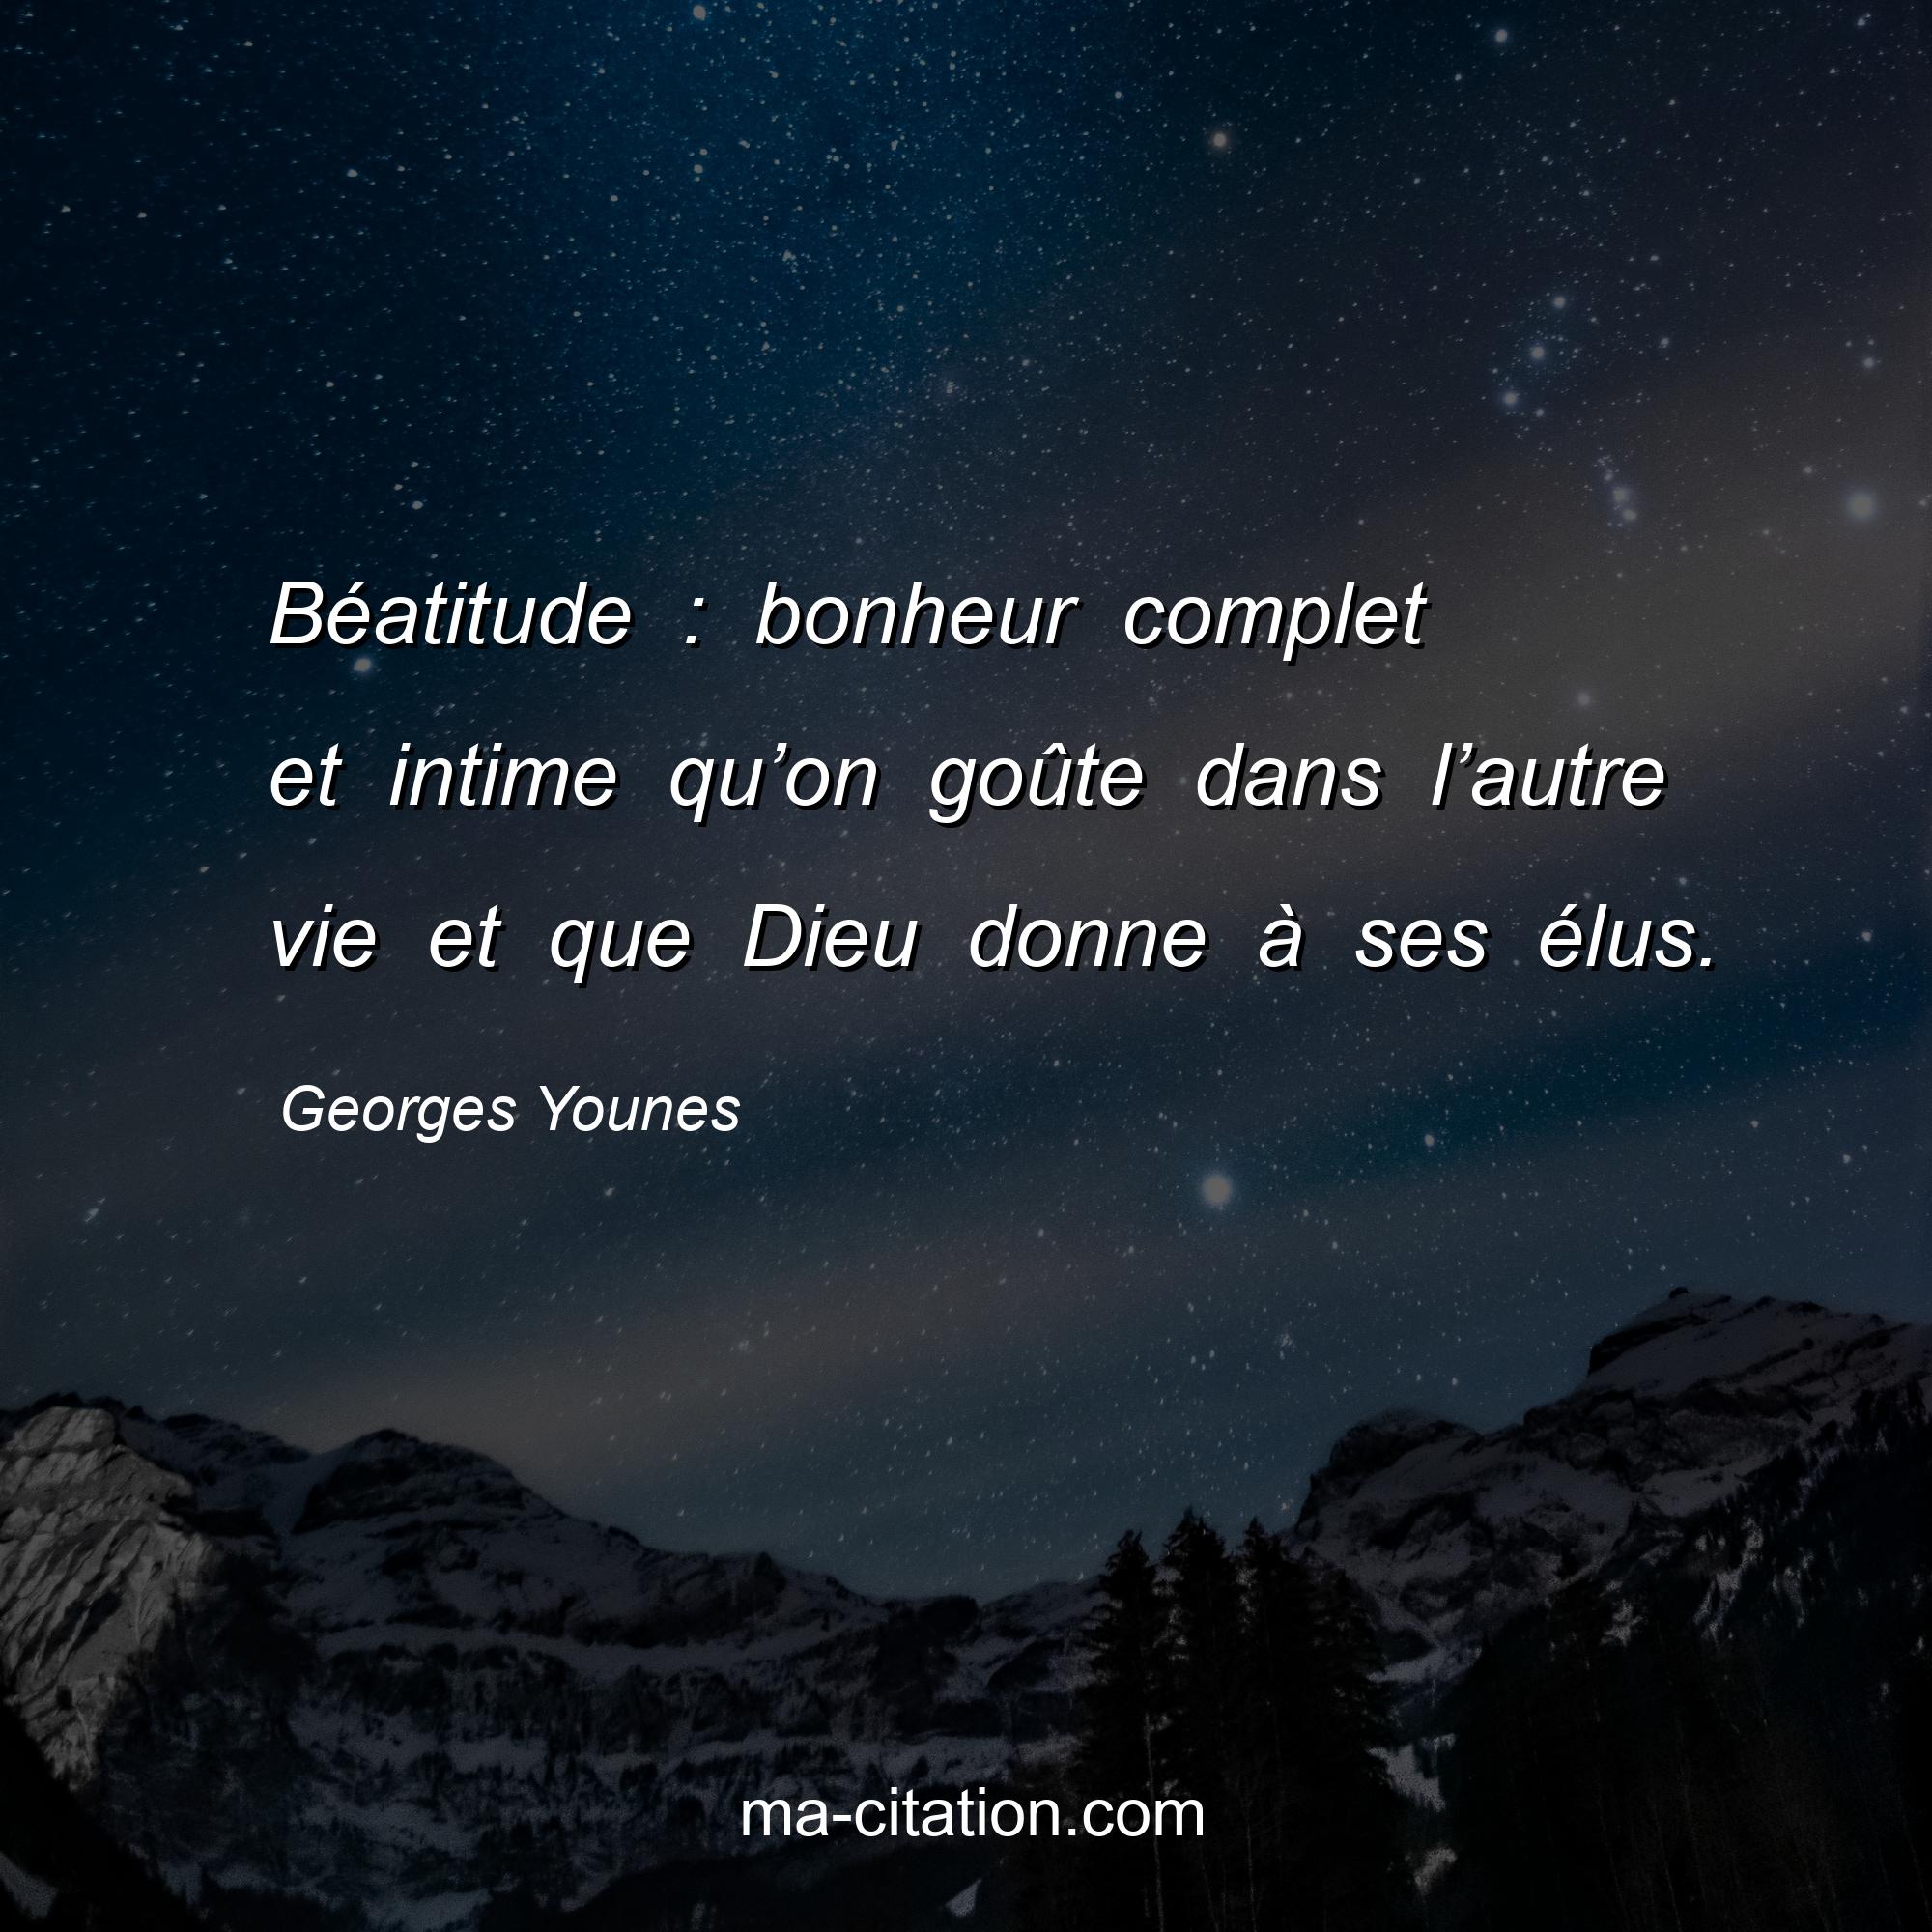 Georges Younes : Béatitude : bonheur complet et intime qu’on goûte dans l’autre vie et que Dieu donne à ses élus.